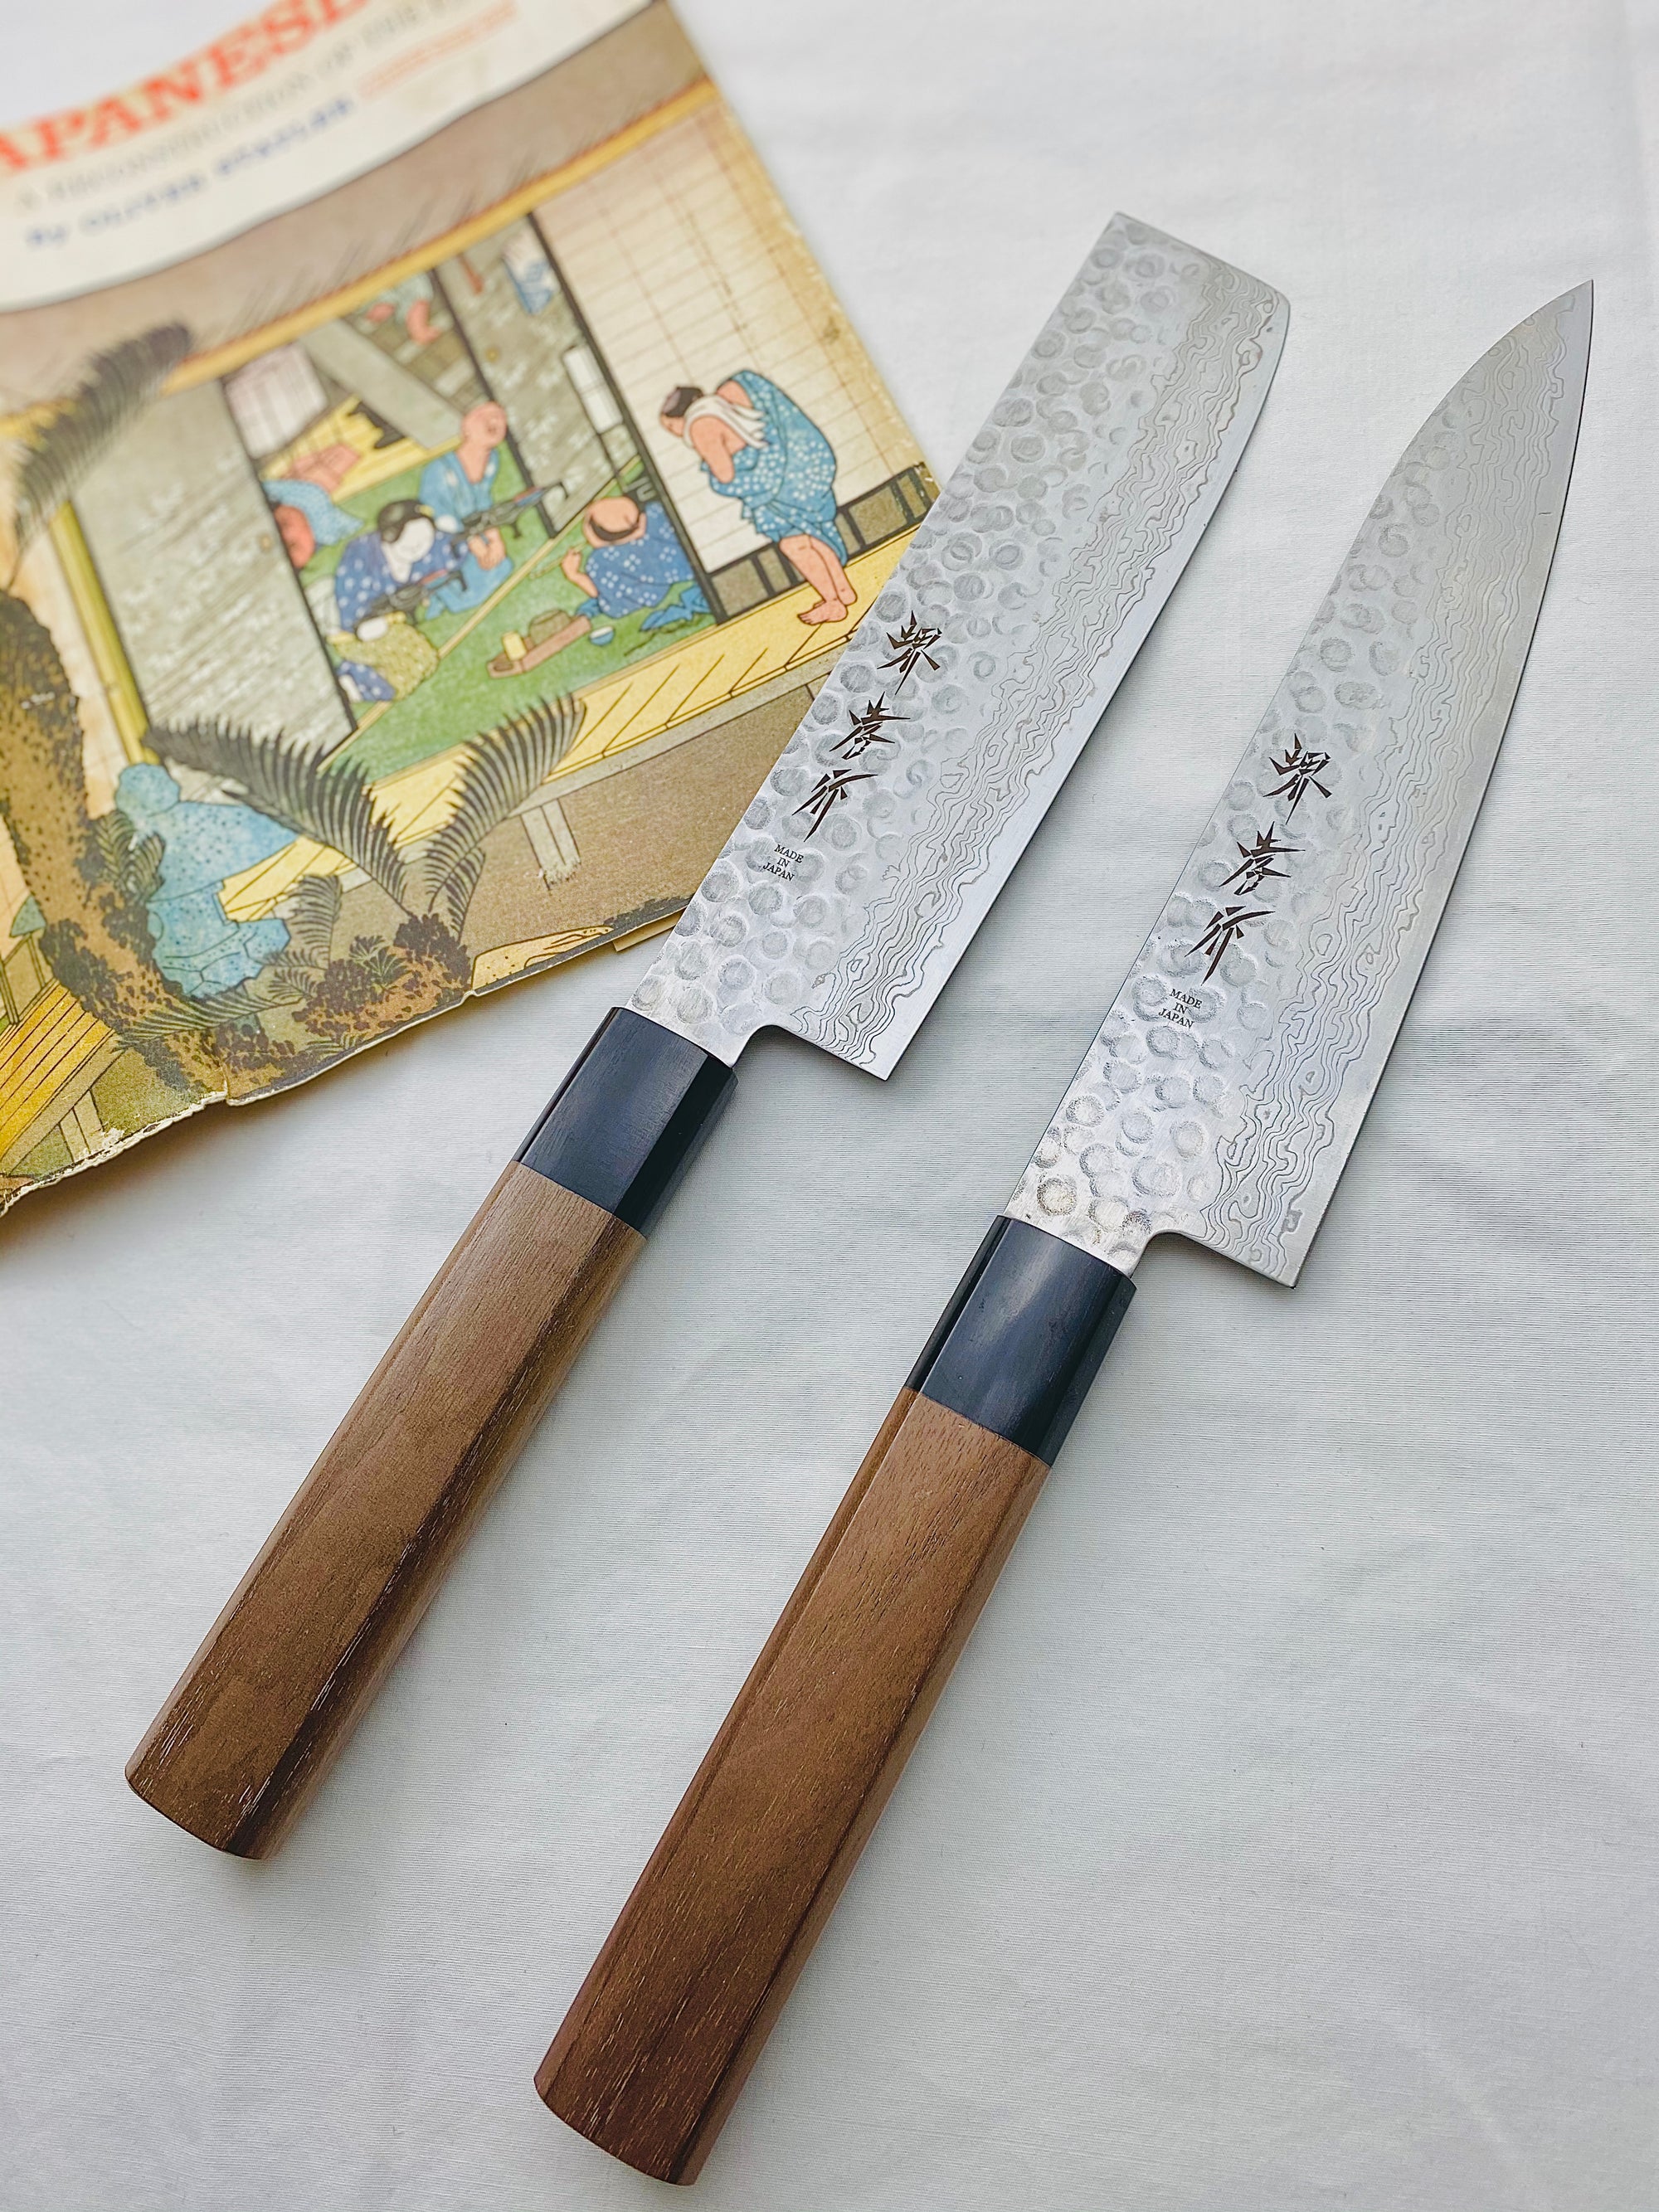 nakiri and santoku japanese knives